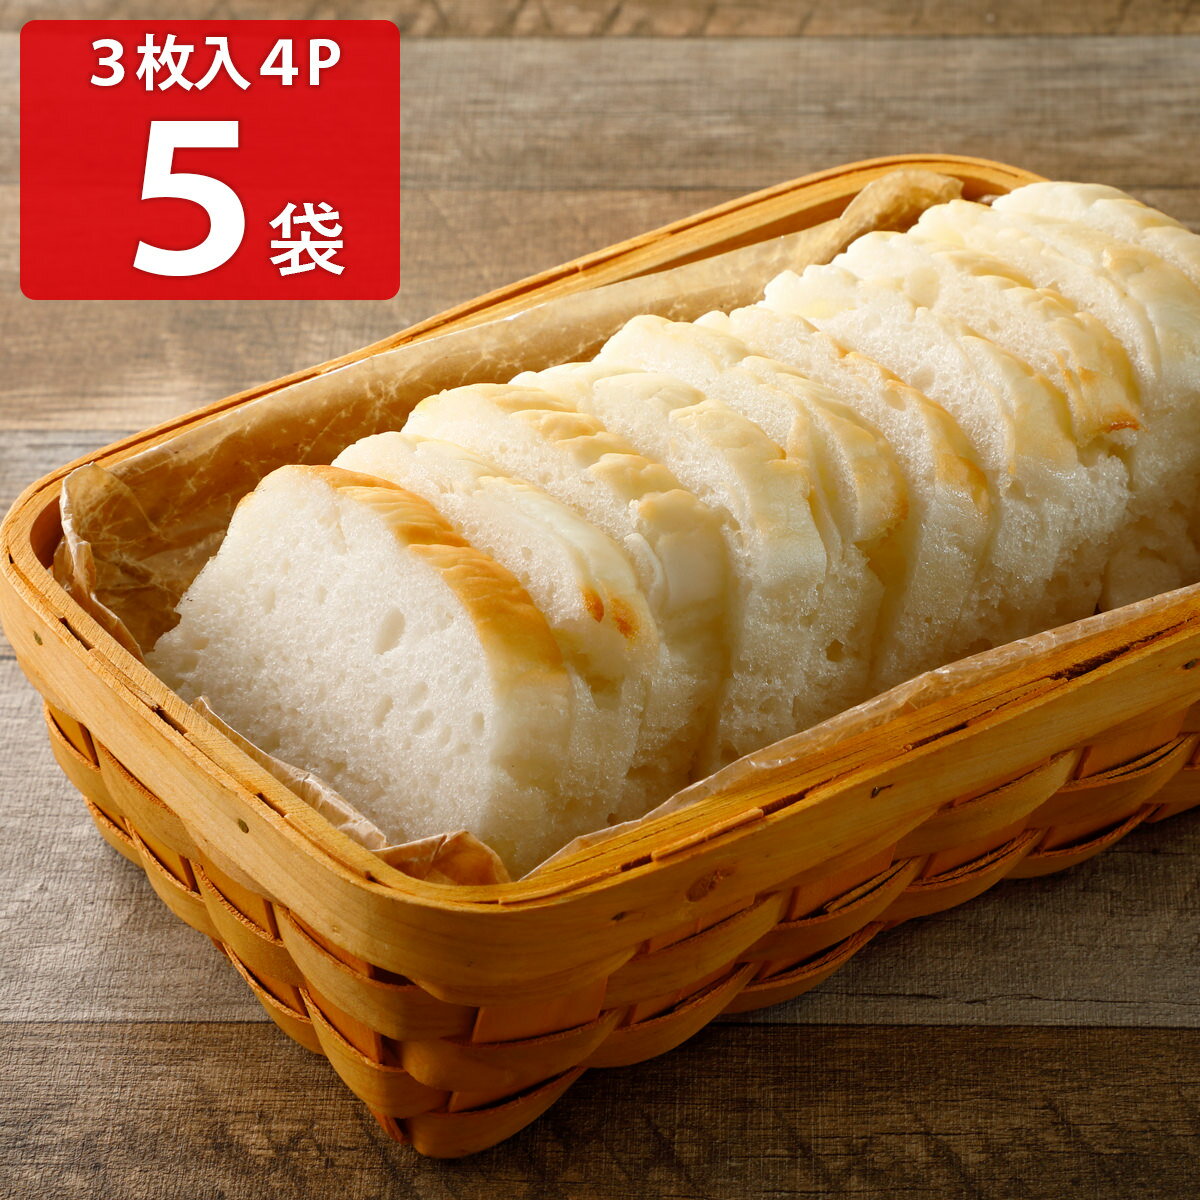 みんなの食卓 お米で作ったしかくいパン 3枚入4袋5パックセット パン グルテンフリー 米粉パン 食パン冷凍パン アレルギー対応 お米パン 個包装